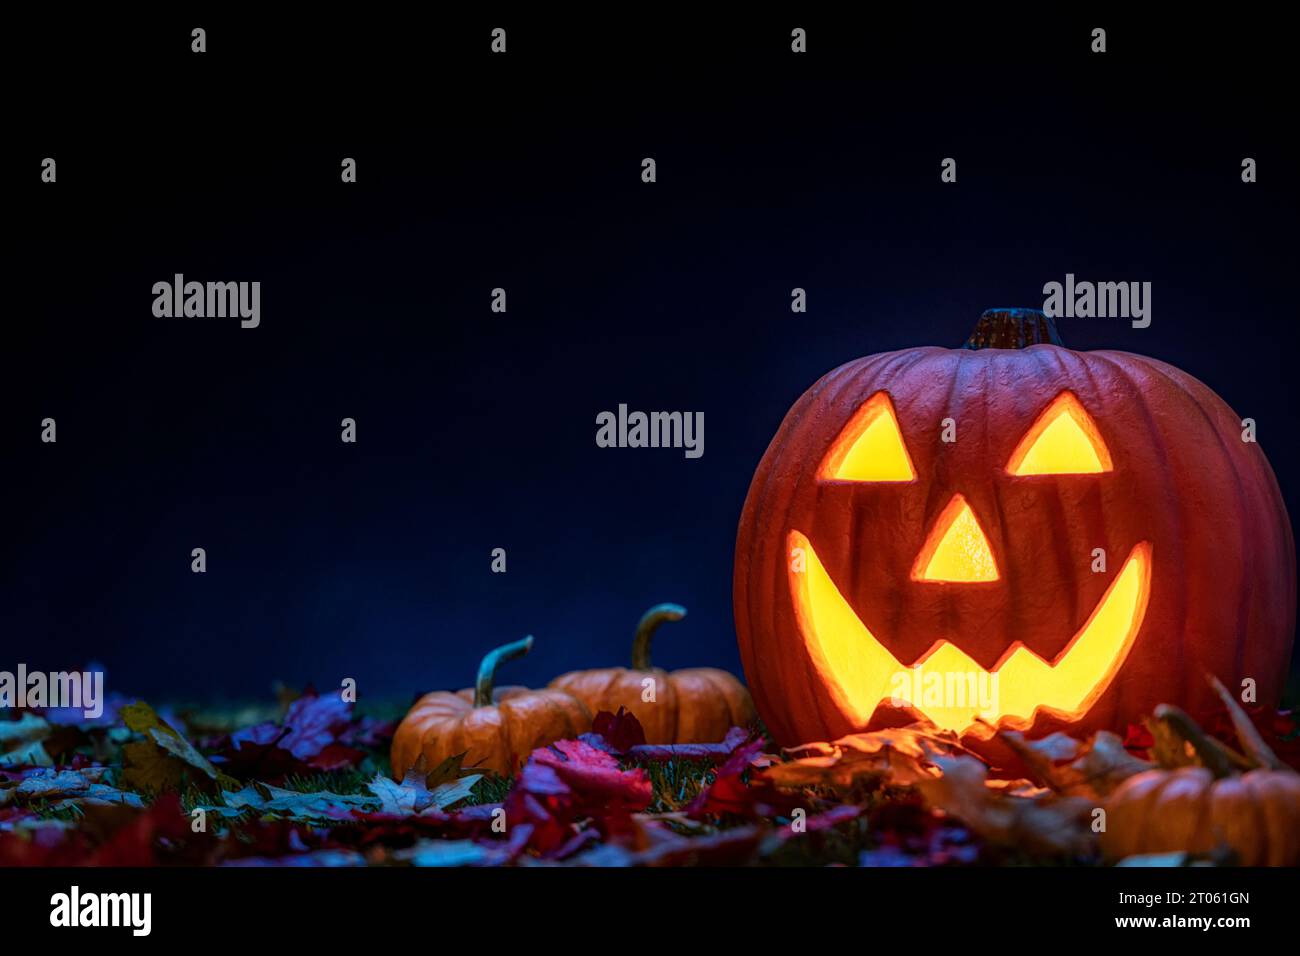 Una zucca scolpita in una Lanterna Jack o sorridente seduta nell'erba con piccole zucche e foglie cadute come decorazione di Halloween. Foto Stock